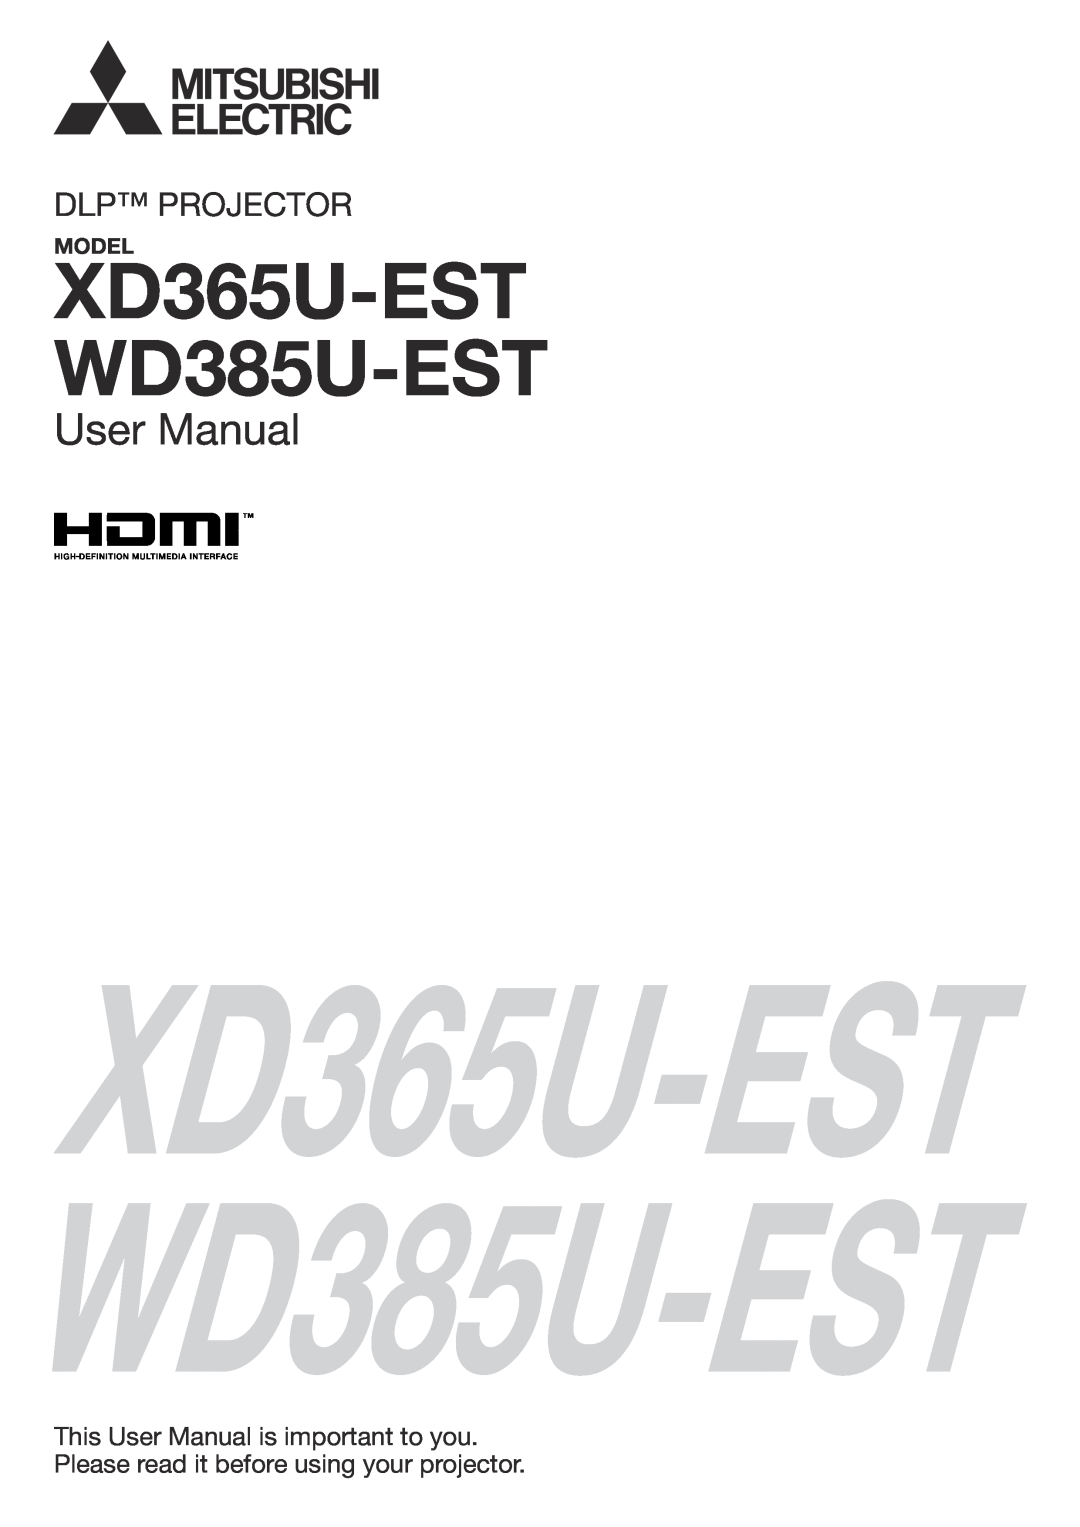 Mitsubishi Electronics user manual Model, XD365U-EST WD385U-EST, User Manual, Dlp Projector 